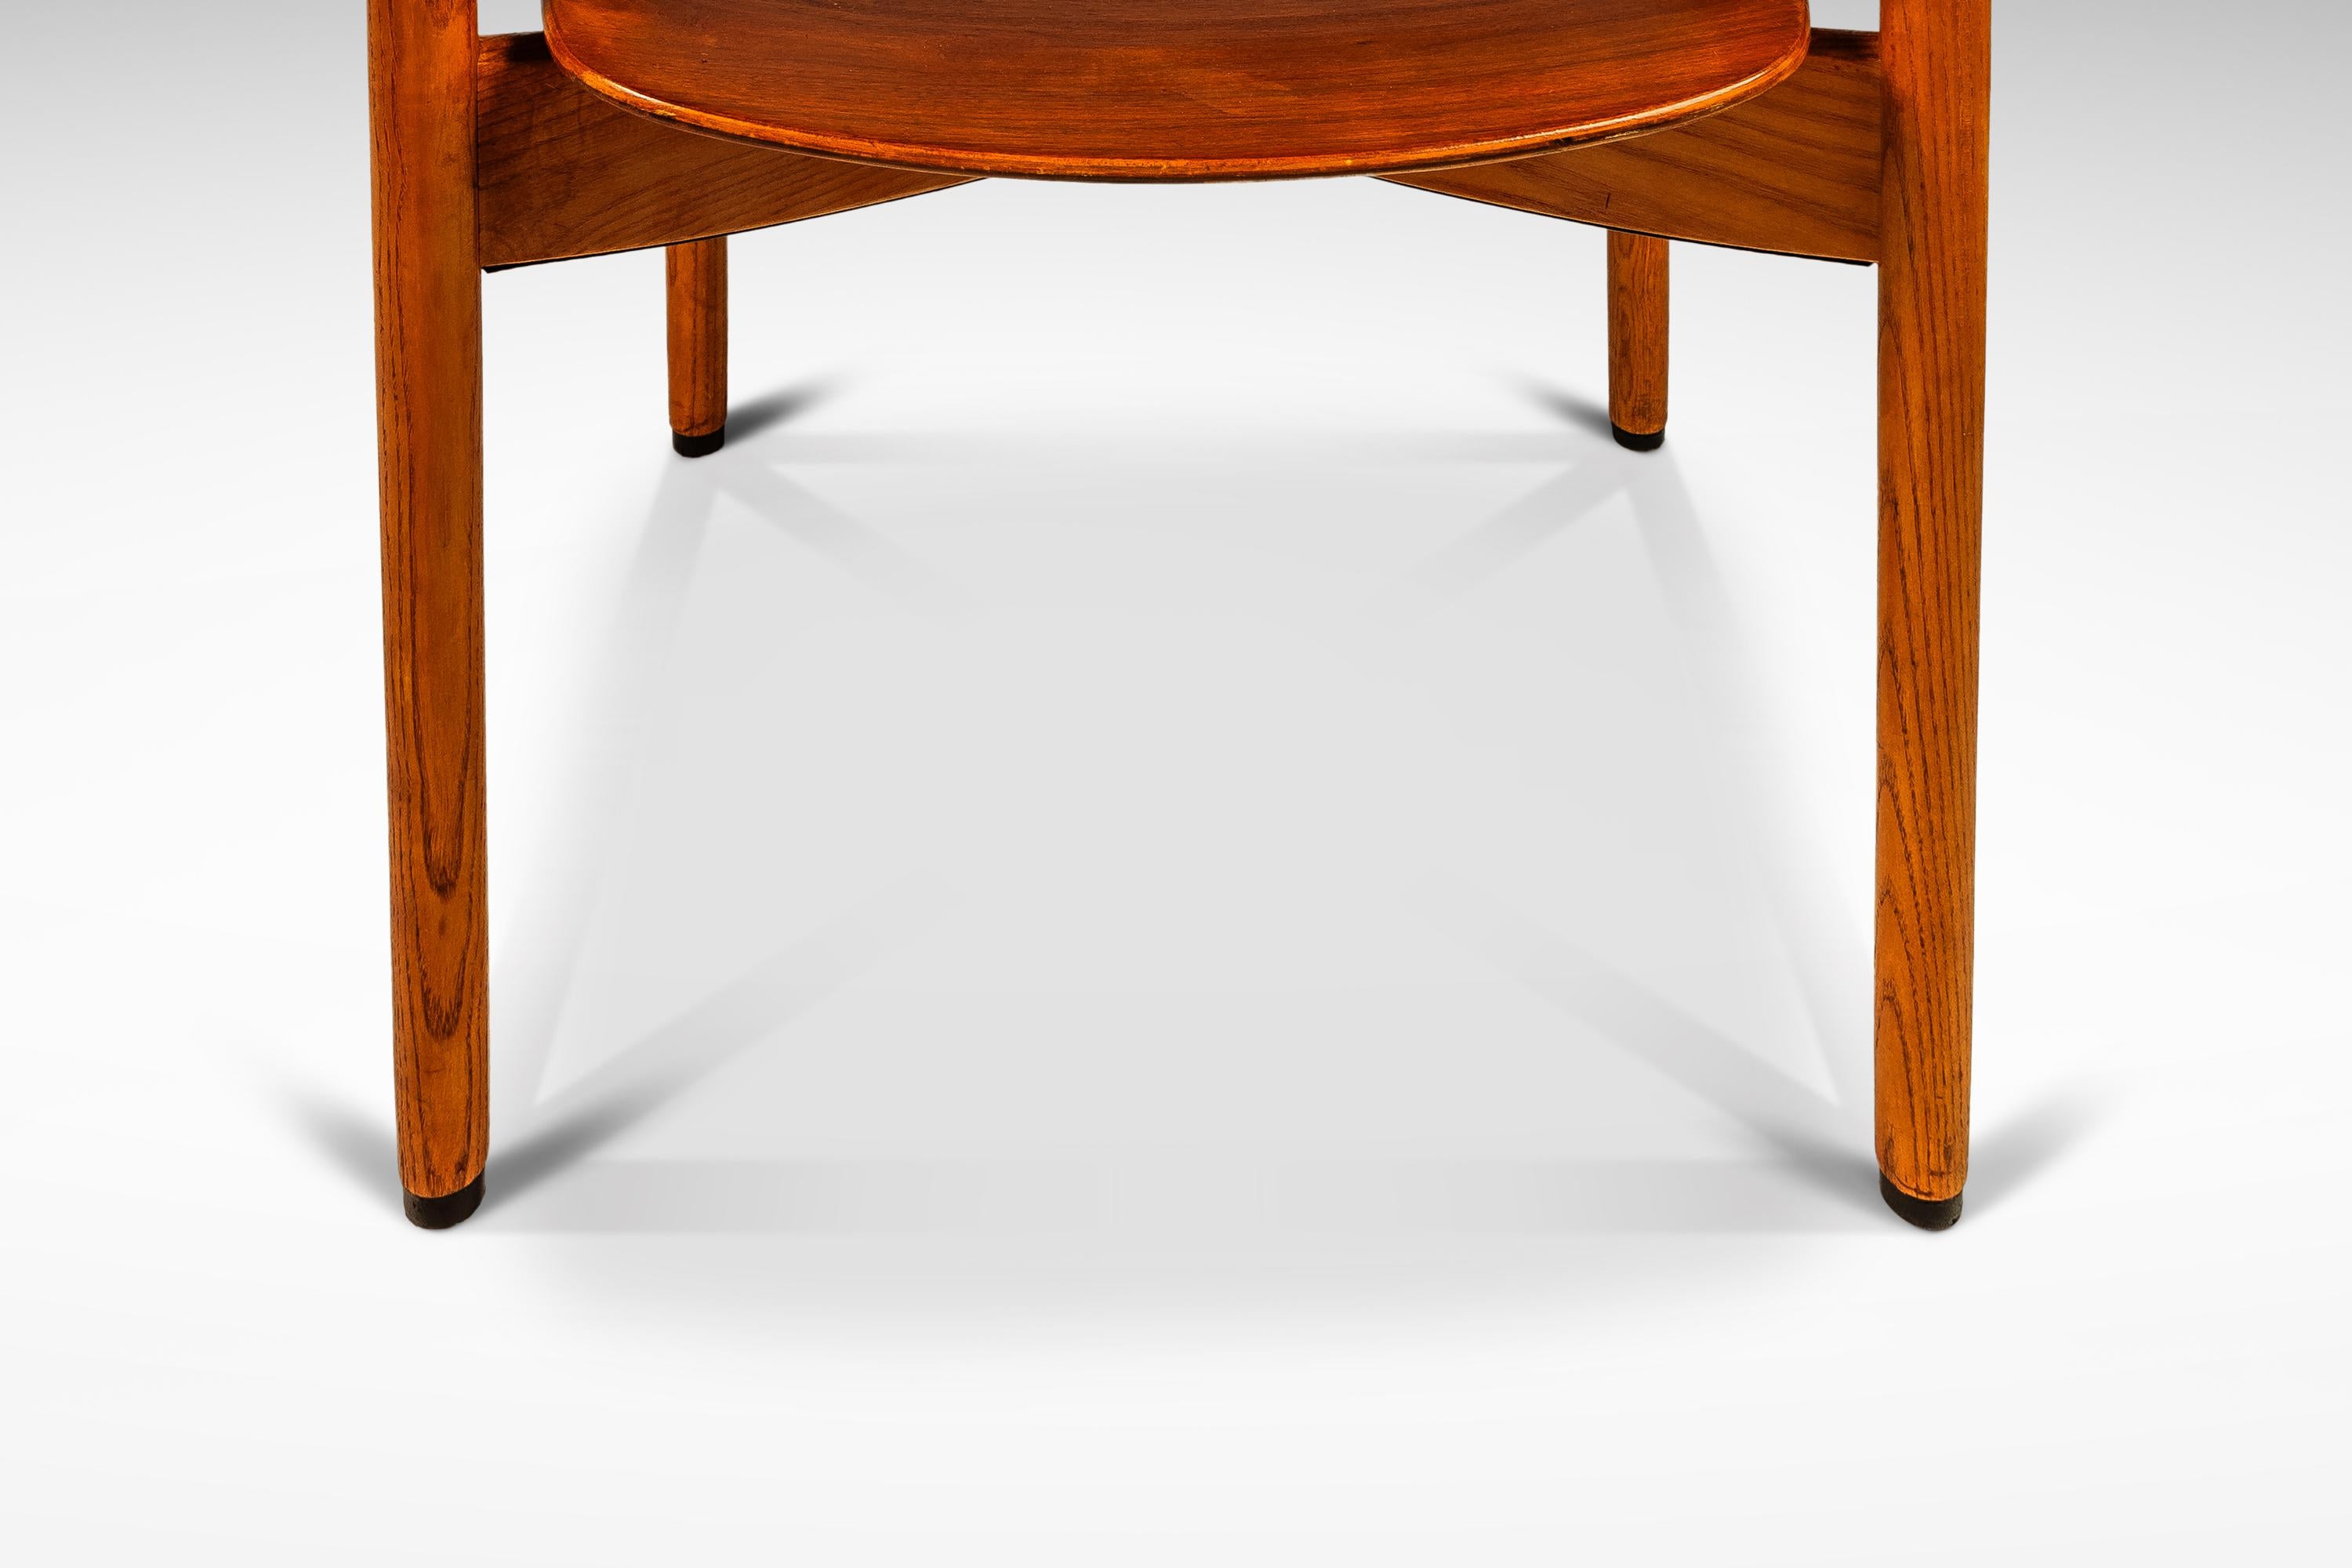 Single Mid-Century Modern Chair in Oak & Walnut  by Jens Risom, USA, c. 1960s For Sale 9